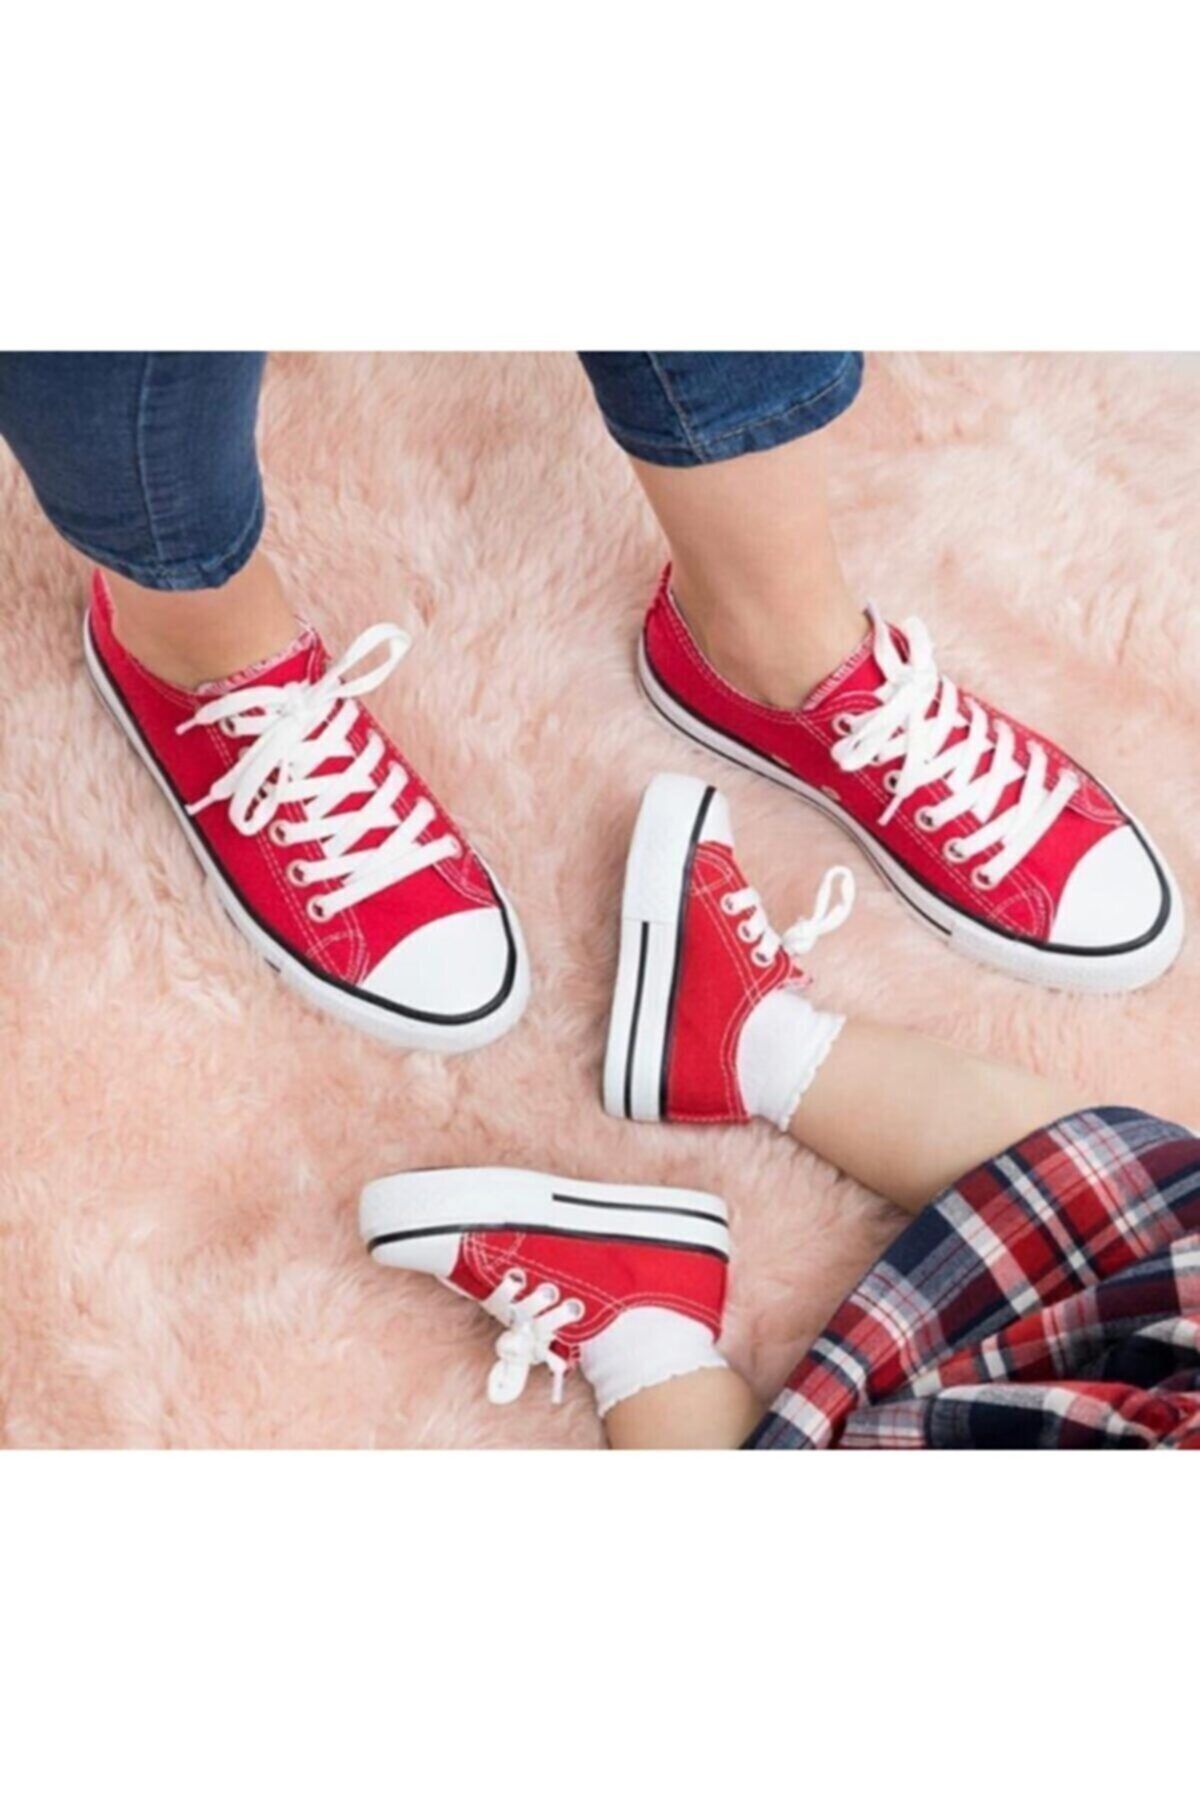 Pembe Potin Unisex Kırmızı Sneaker Keten Spor Ayakkabı Anne Baba Çoçuk Takım